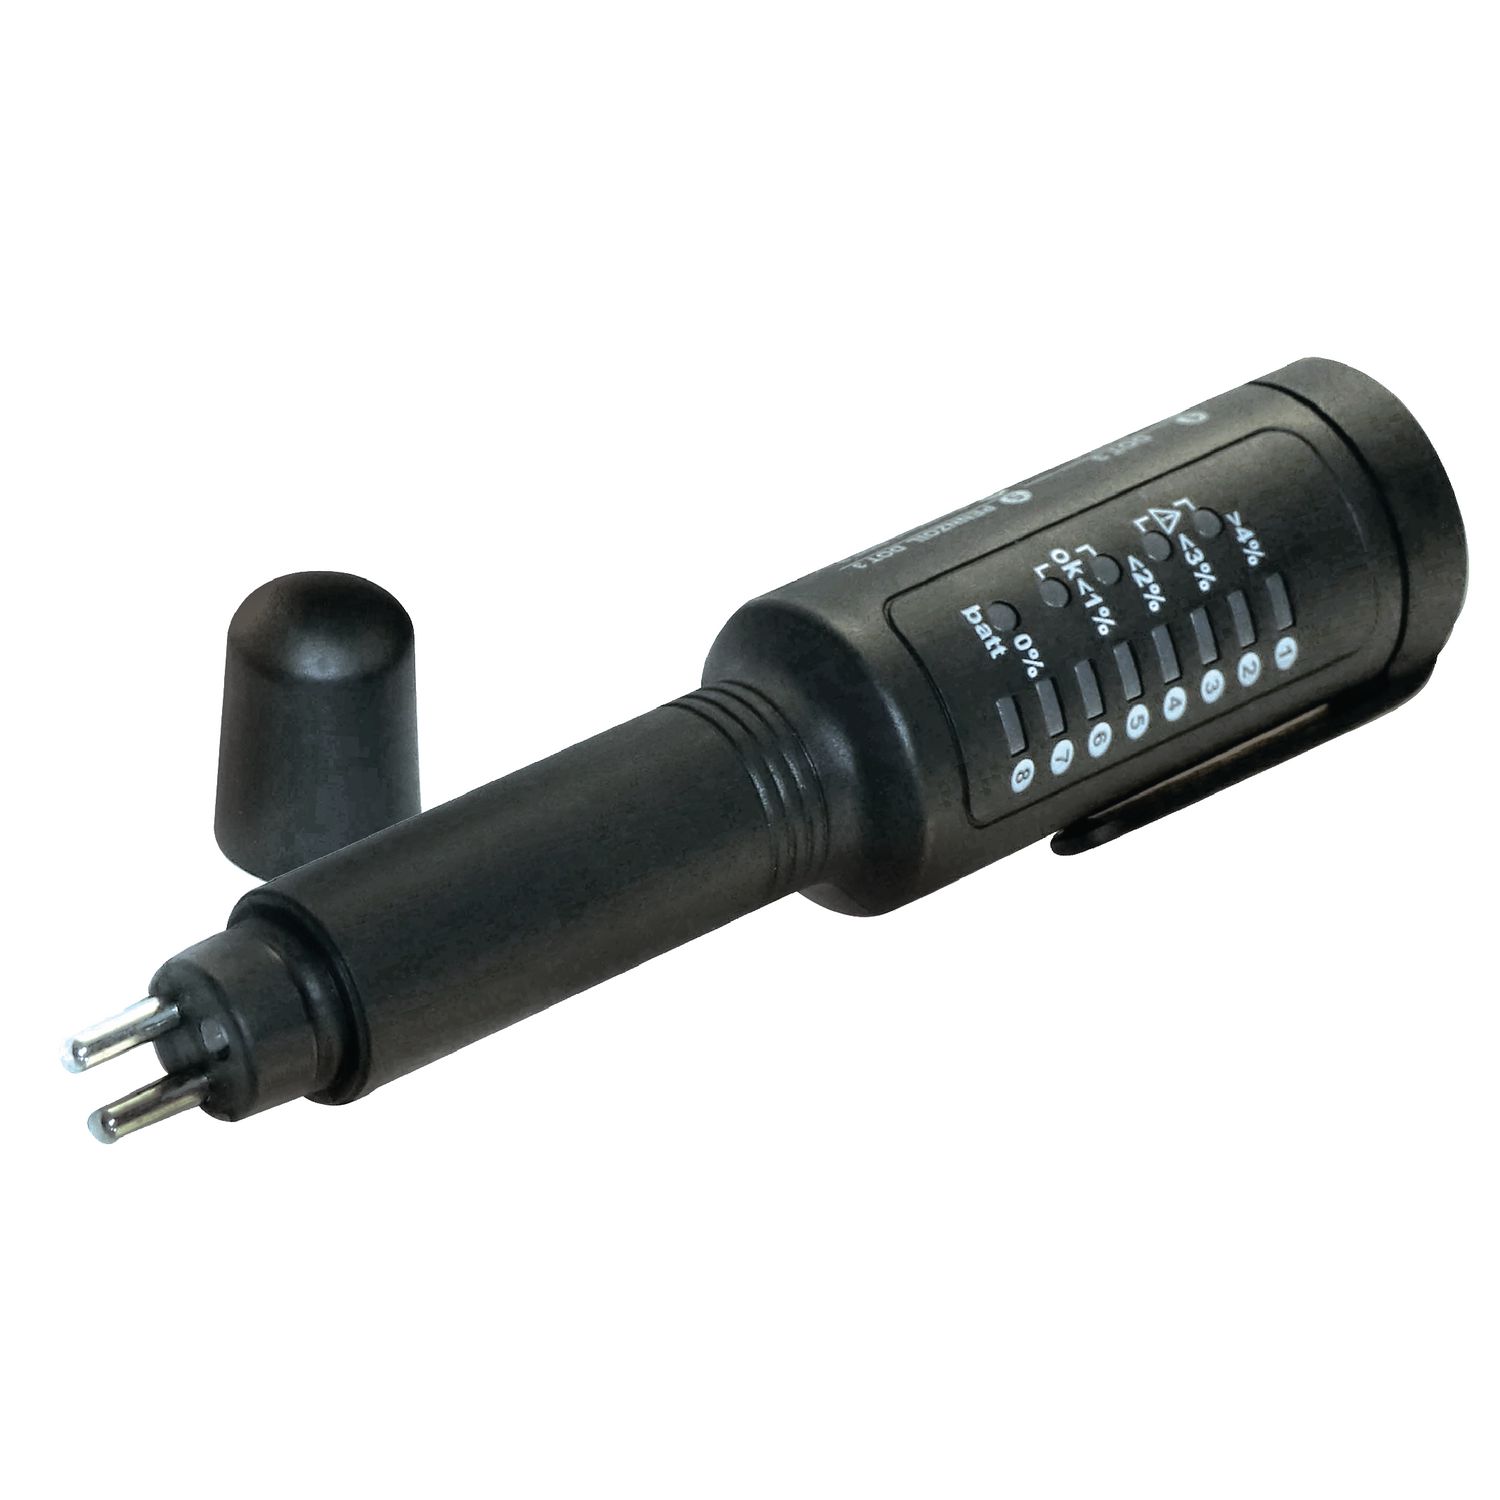 Hloma Brake Fluid Tester High Precision Sensitive Universal Battery Powered  Car Brake Fluid Tester Pen for Car for DOT3 DOT4 DOT5.1 